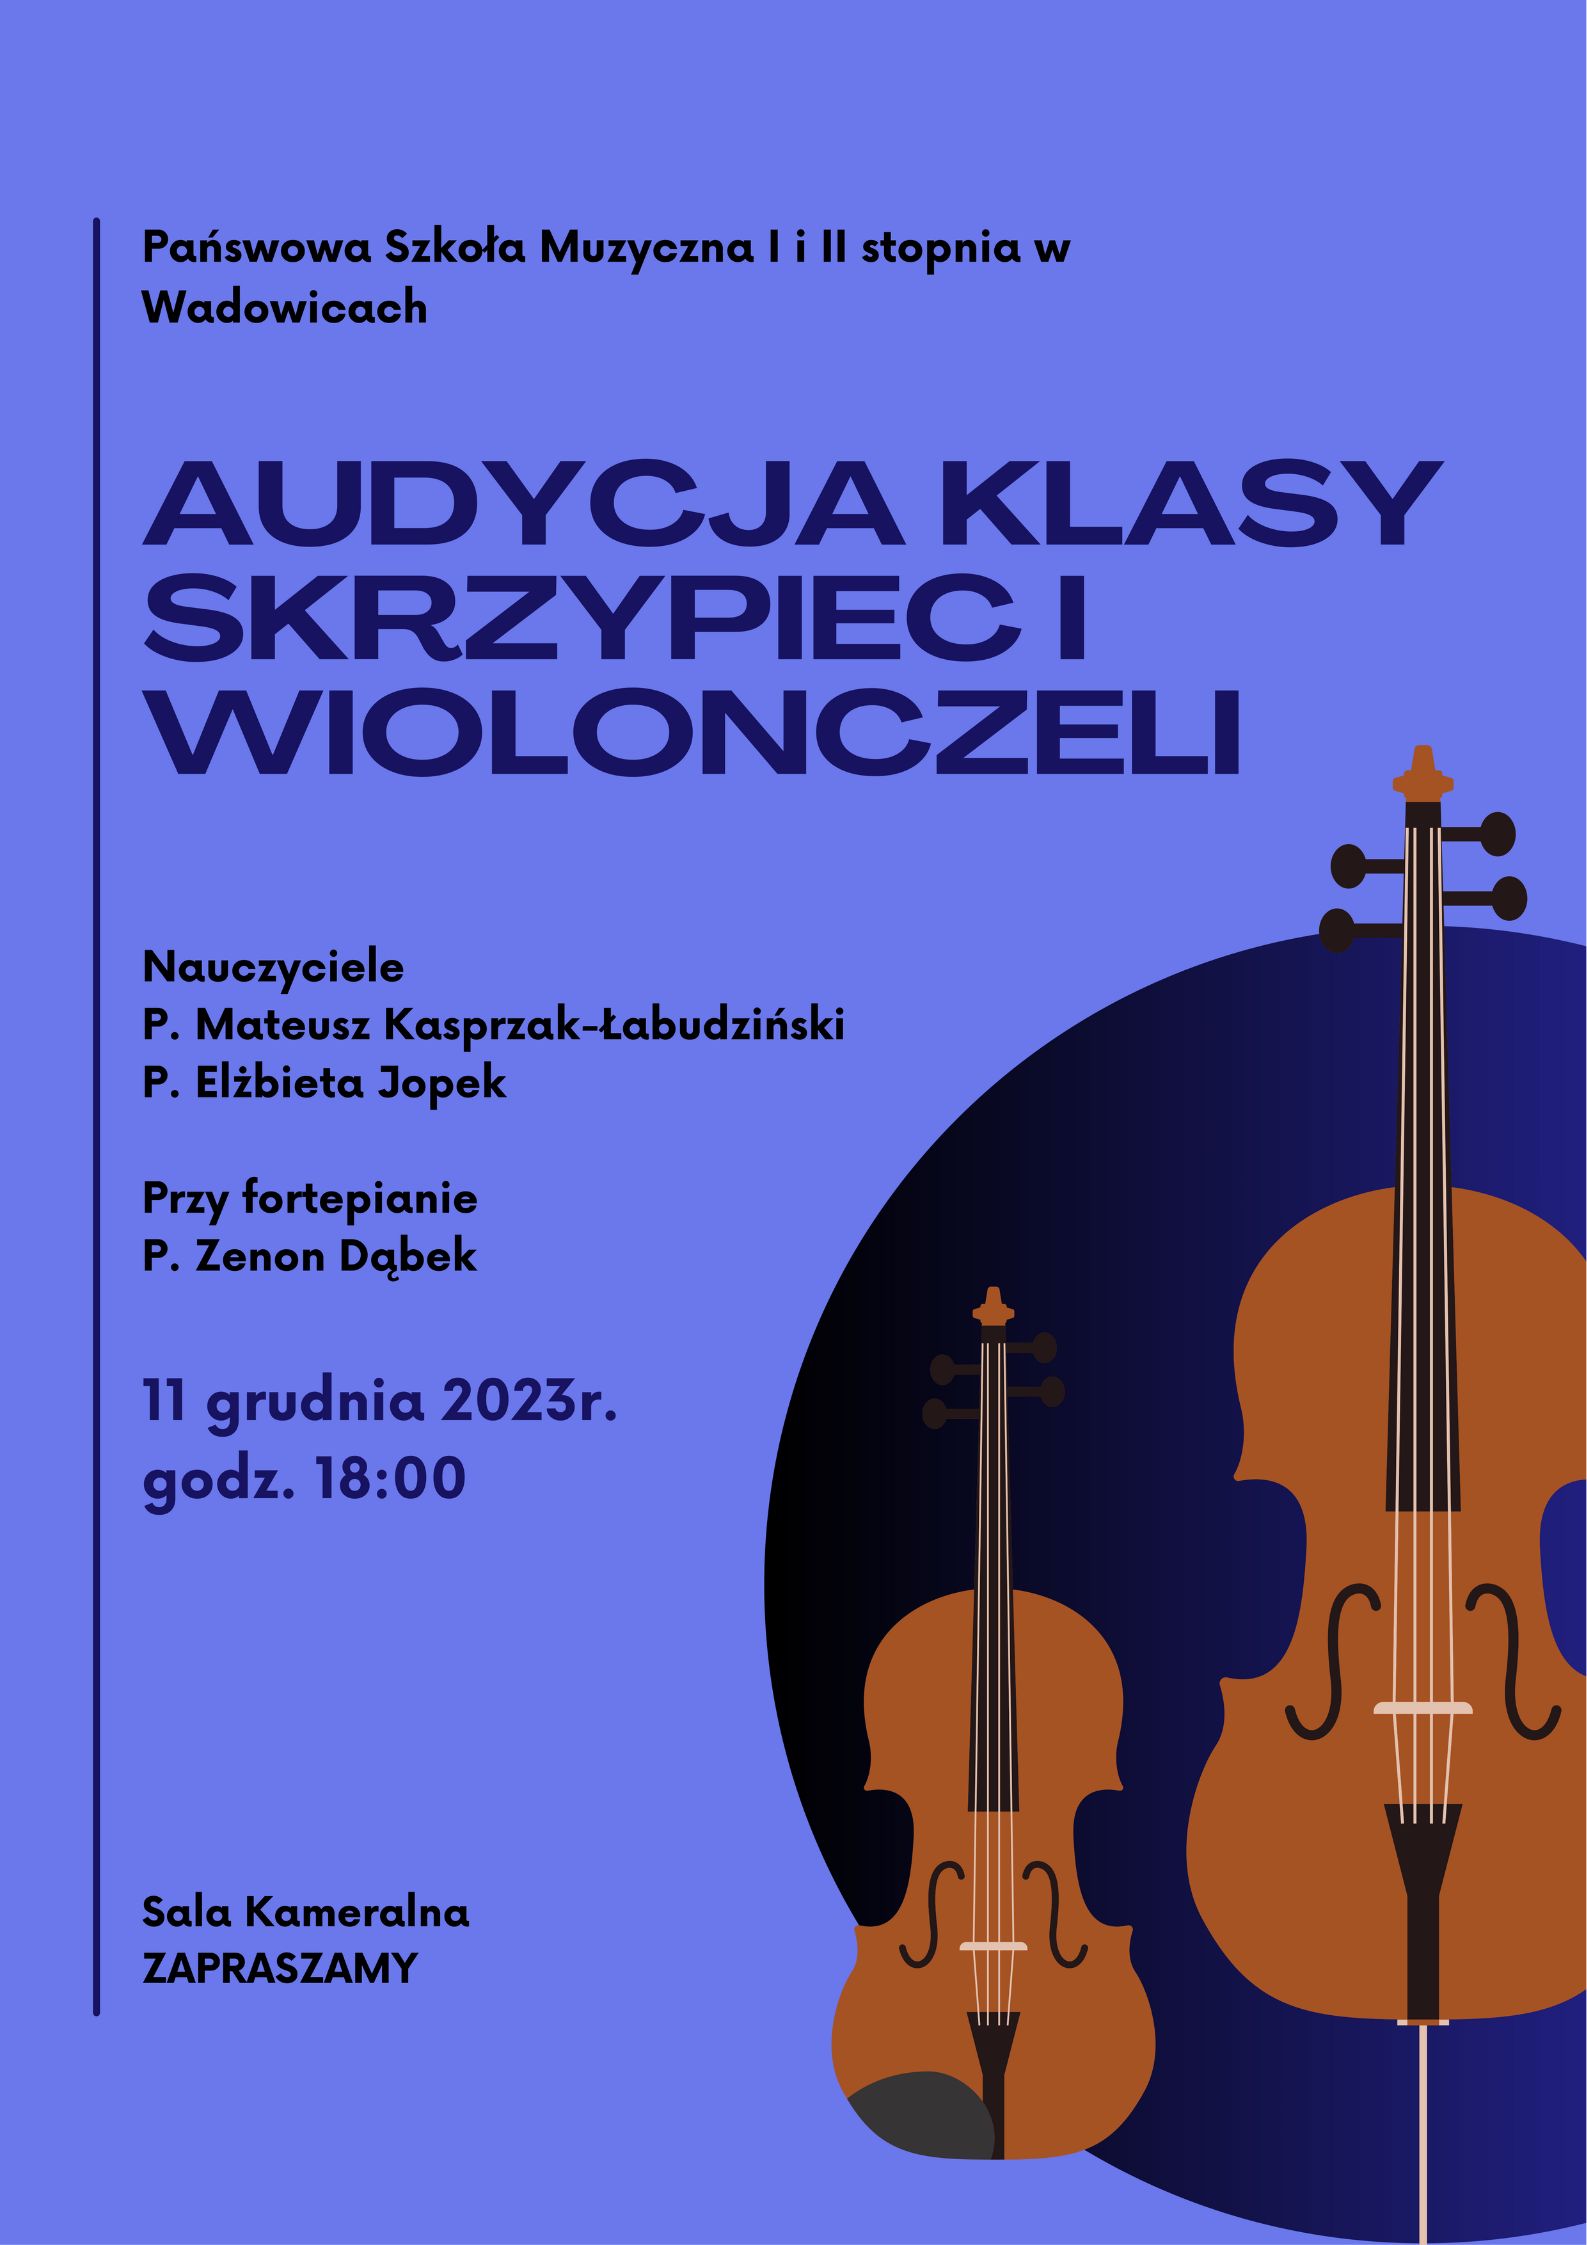 Audycja klasy skrzypiec i wiolonczeli 11.12.2023